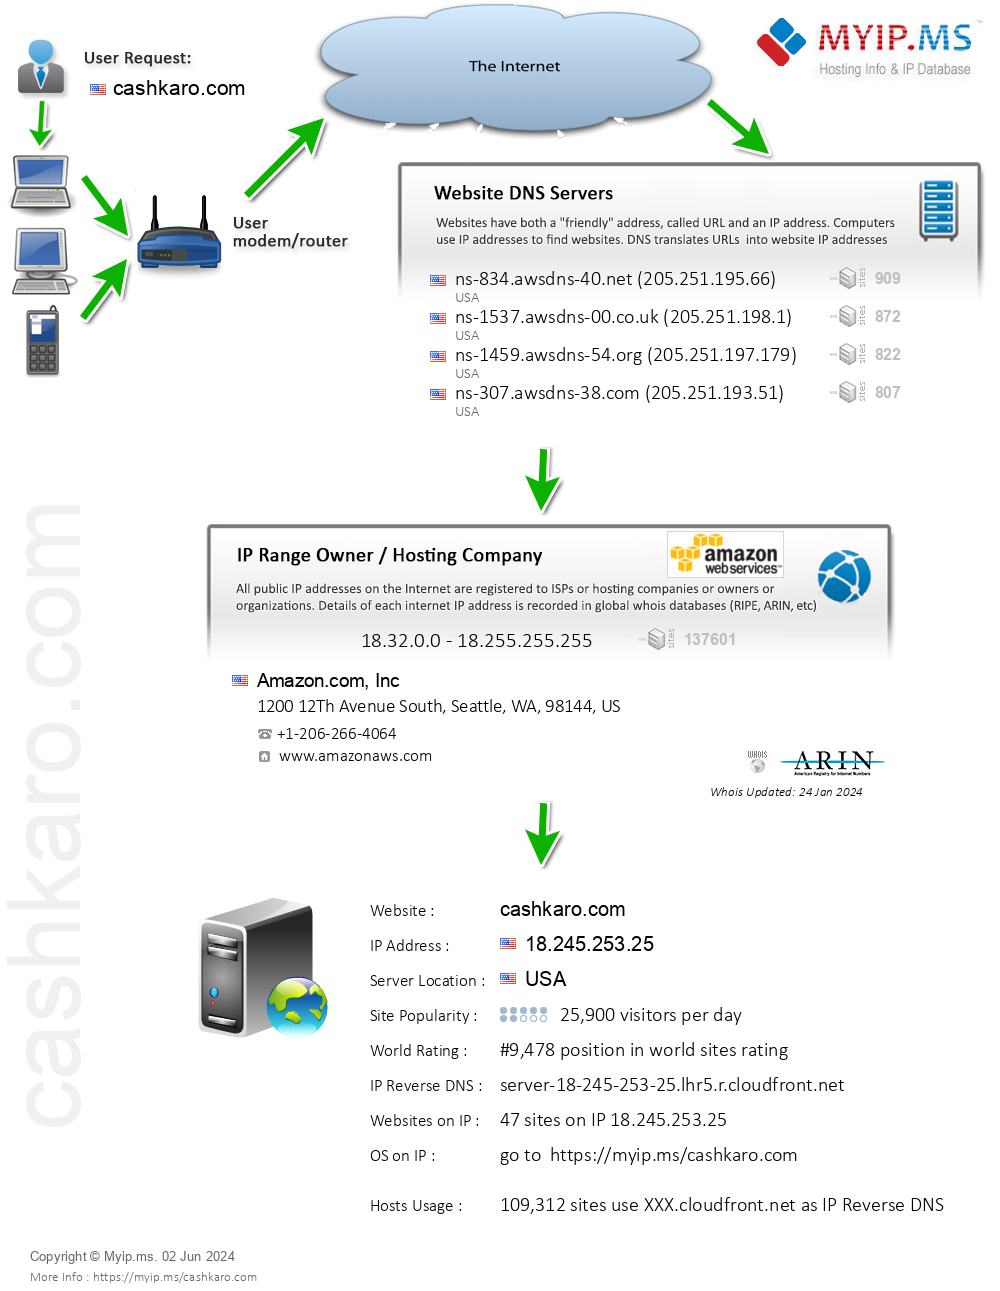 Cashkaro.com - Website Hosting Visual IP Diagram